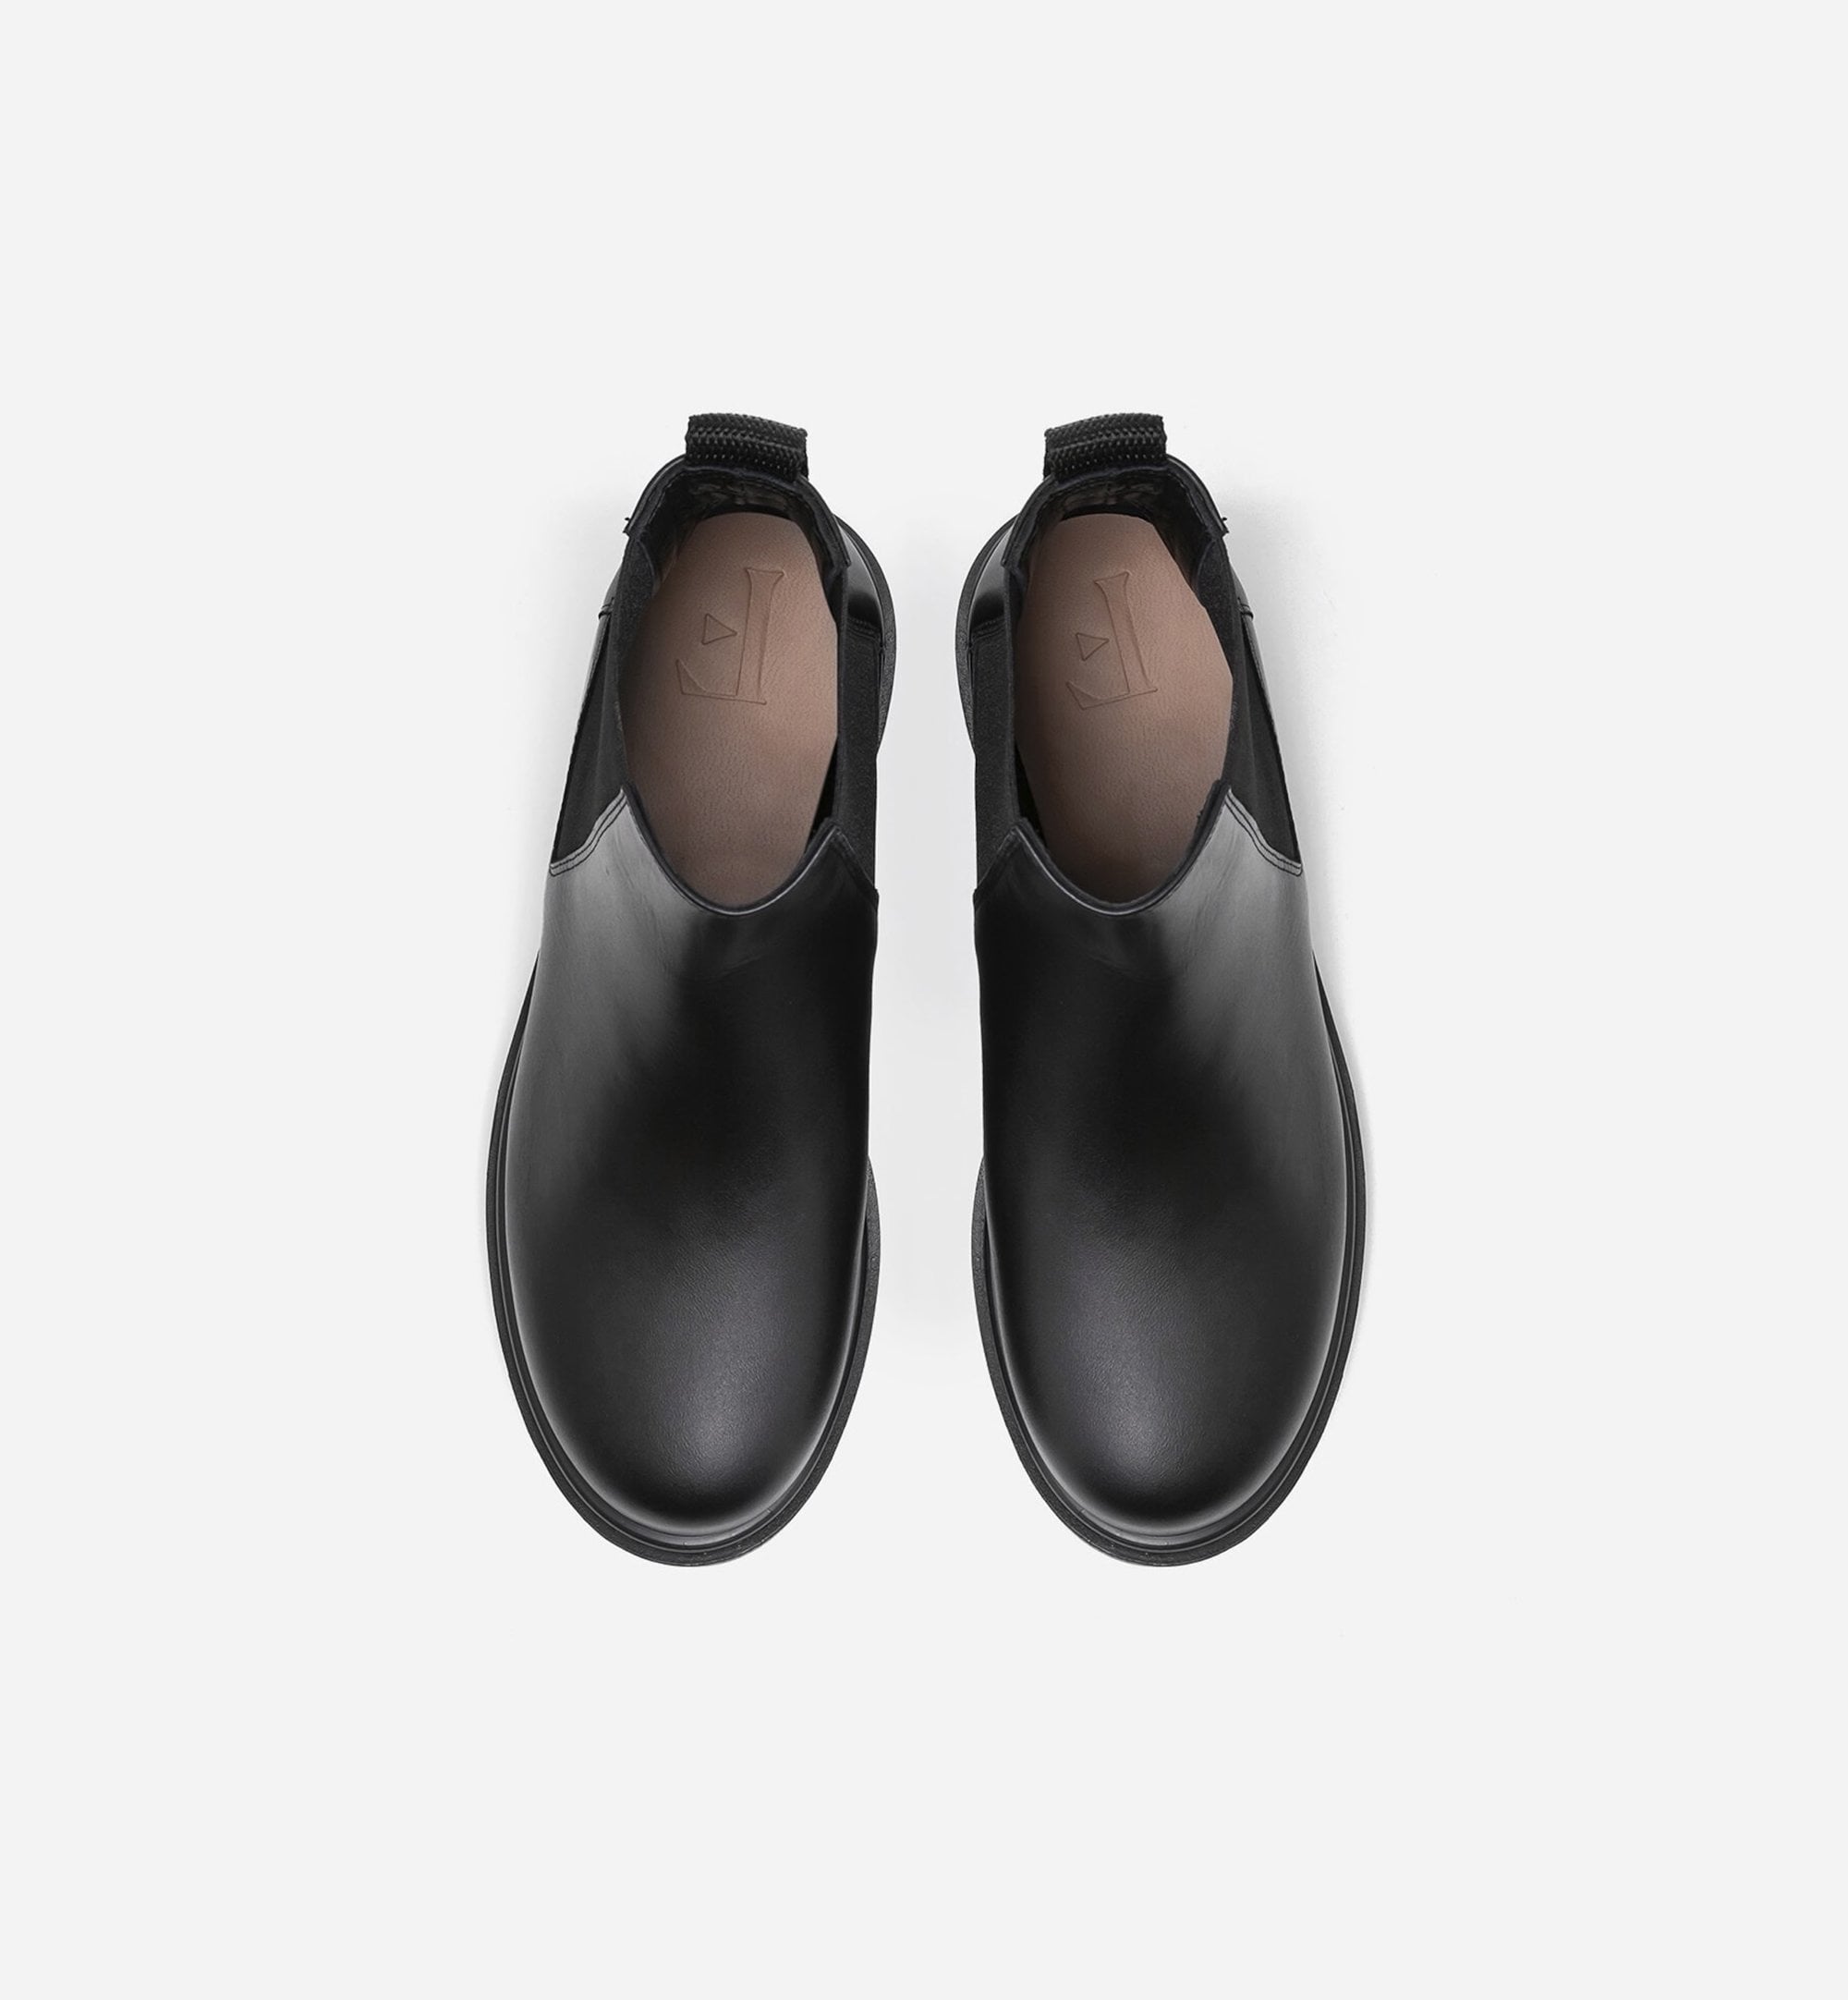 Lova Boot - Black Leather